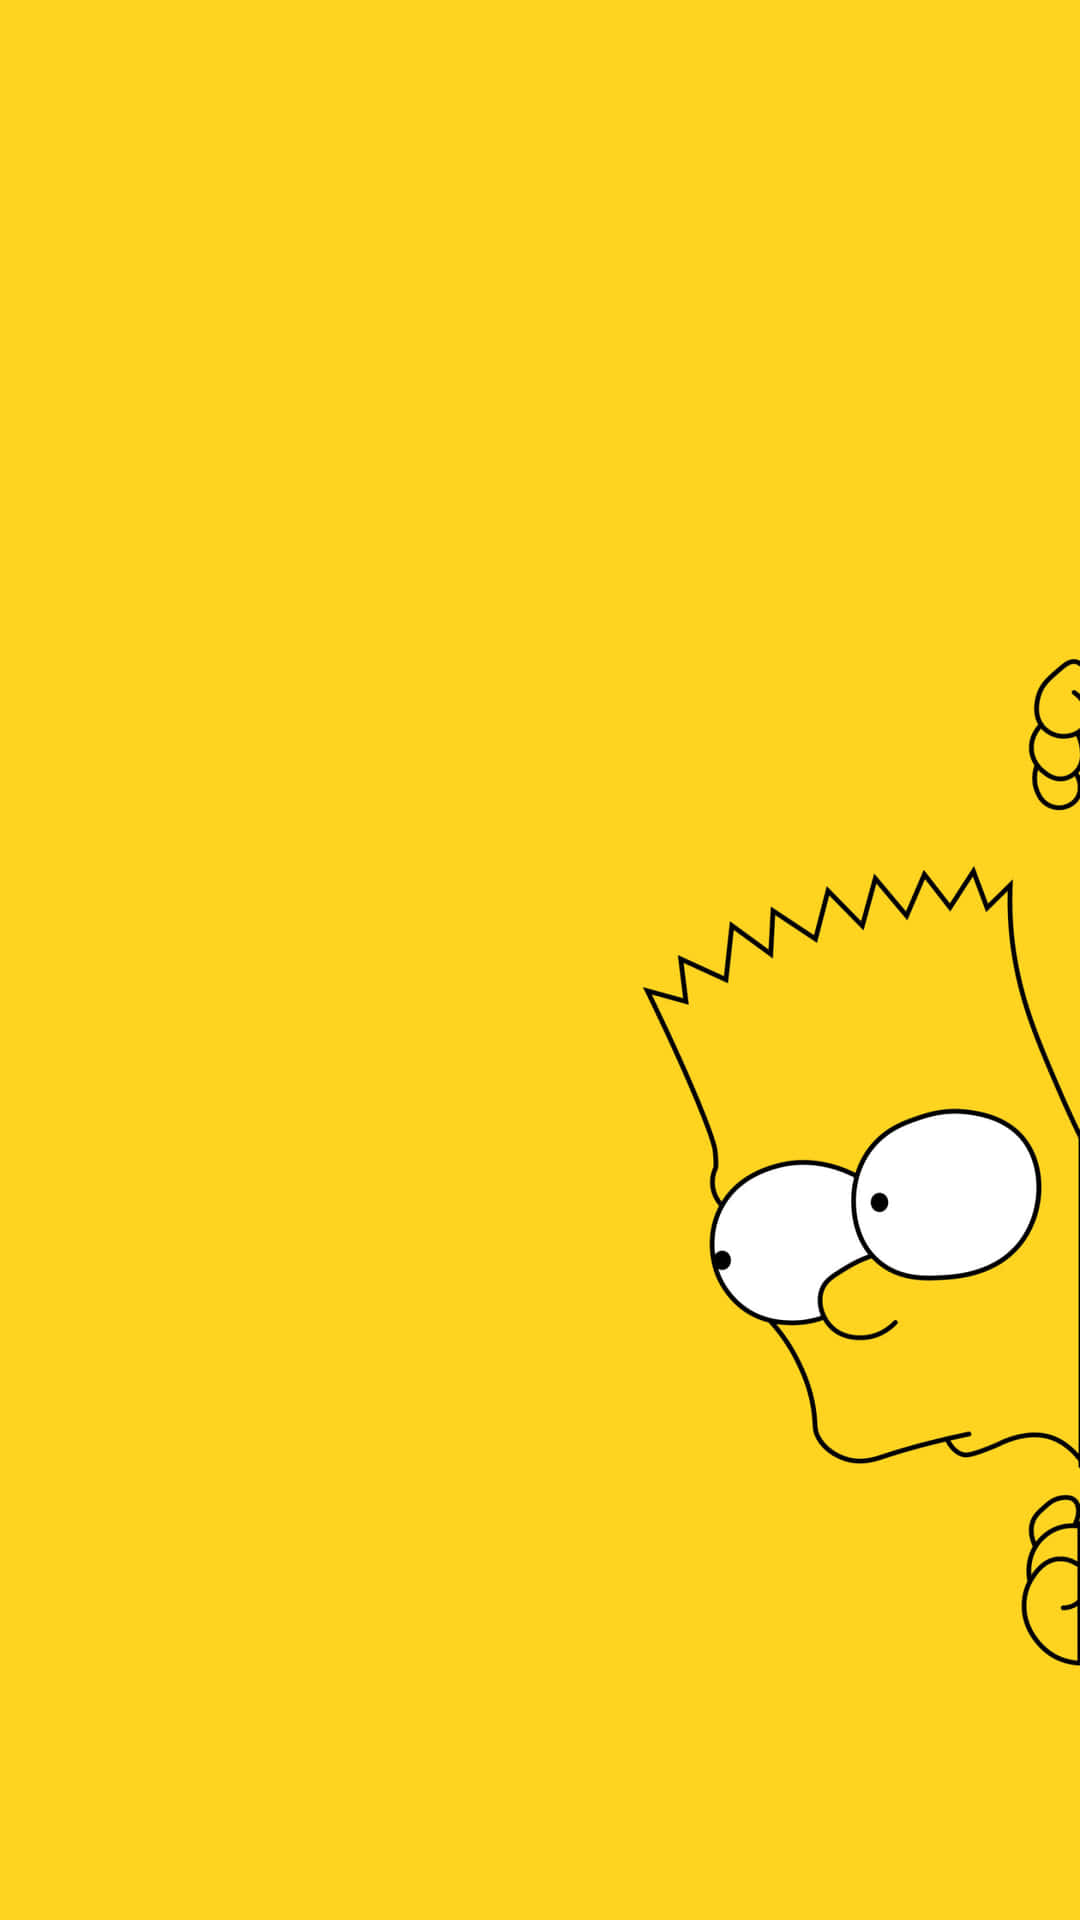 Papelde Parede Legal Com A Estética Do Bart Simpson. Papel de Parede